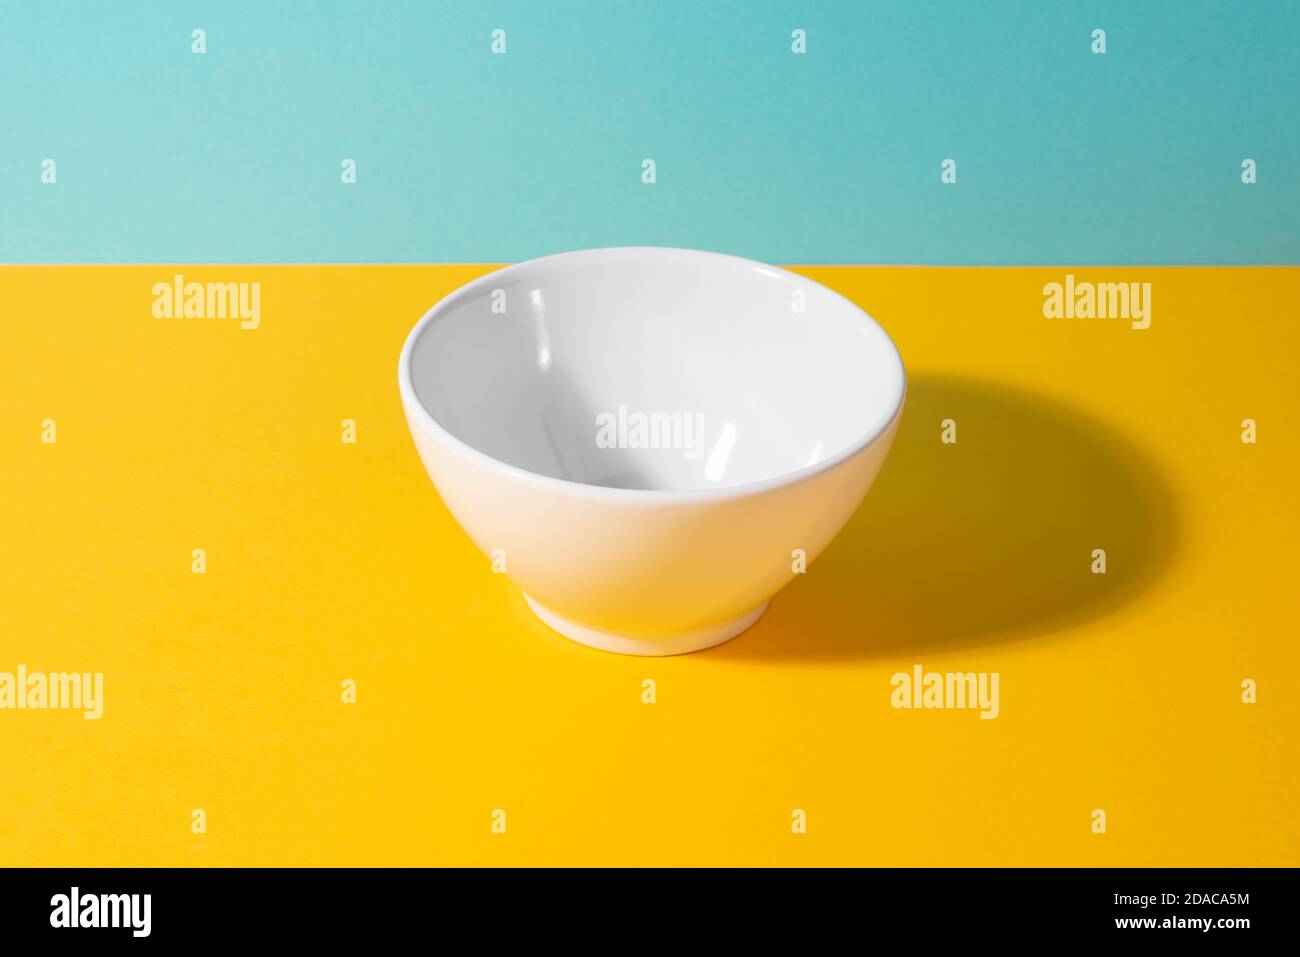 Svuotare il recipiente in ceramica bianco su sfondo giallo e blu Foto Stock